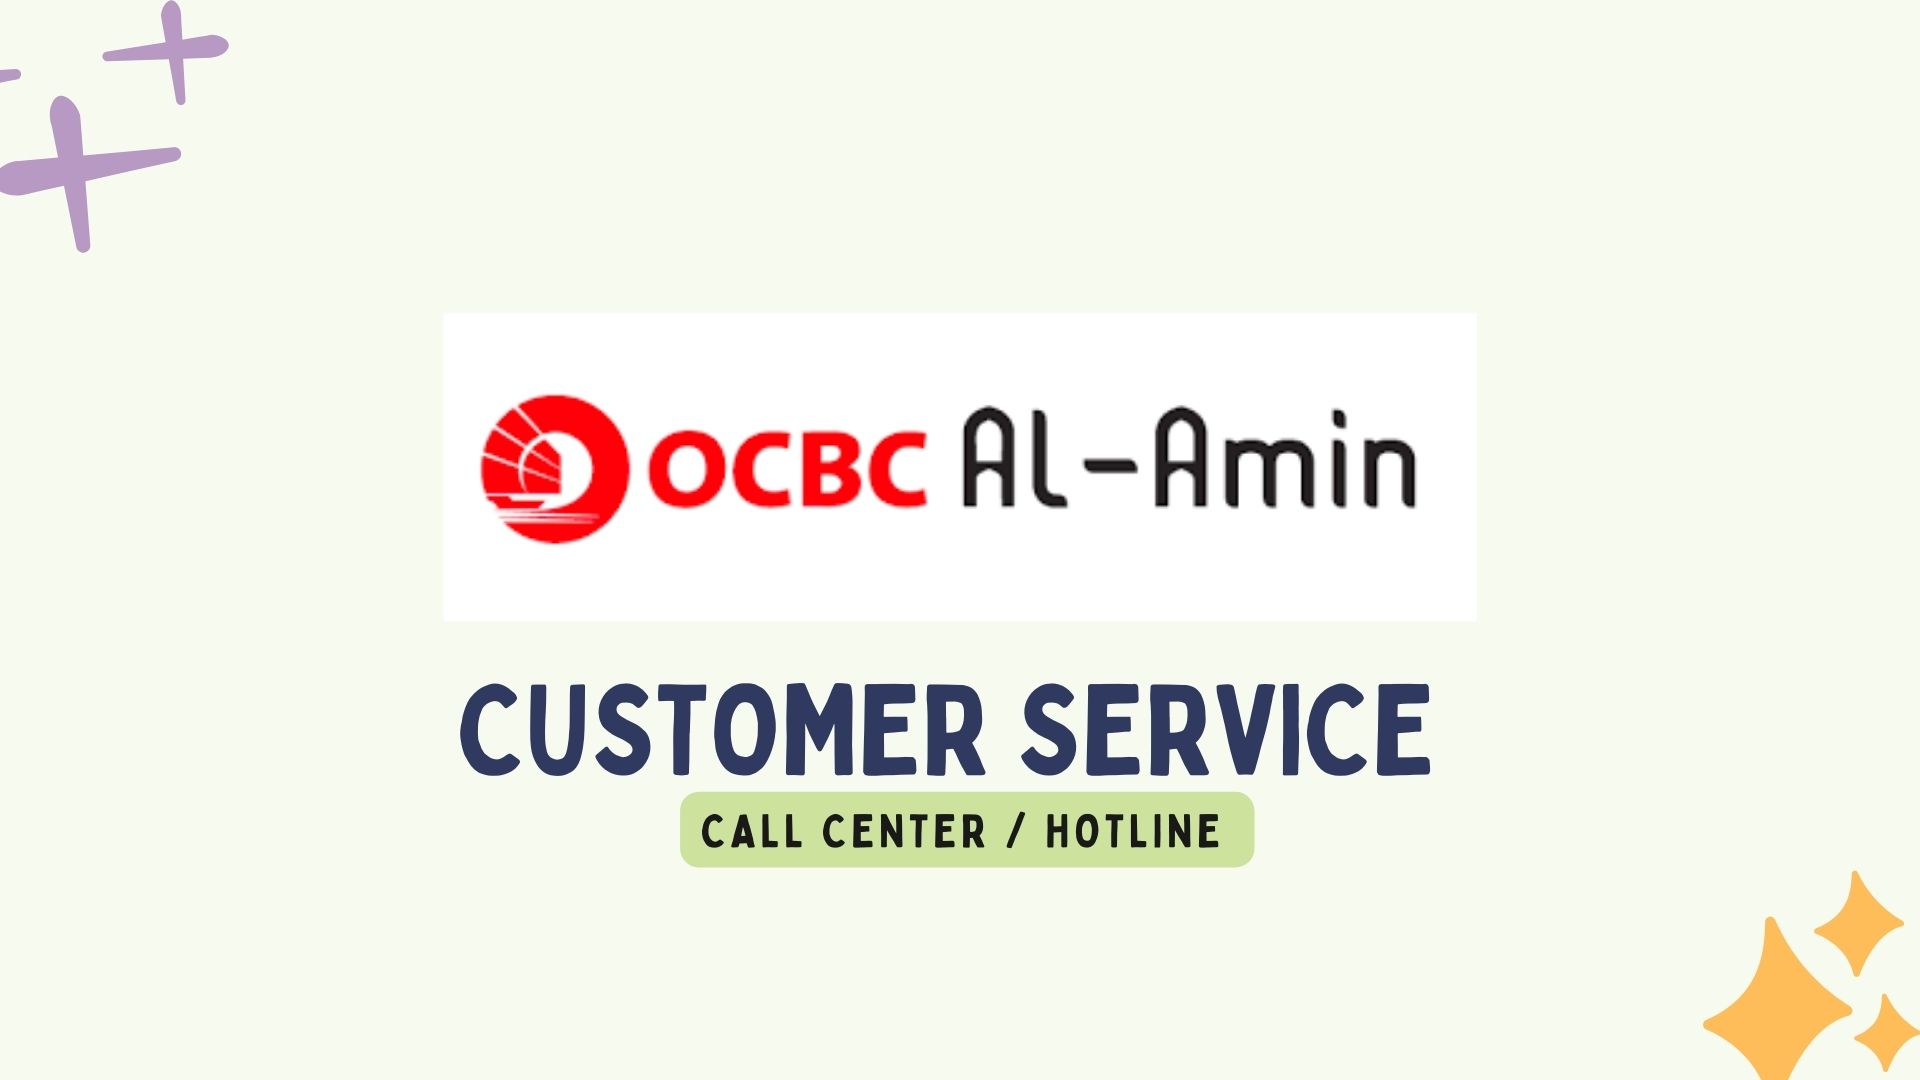 OCBC Al Amin Customer Service